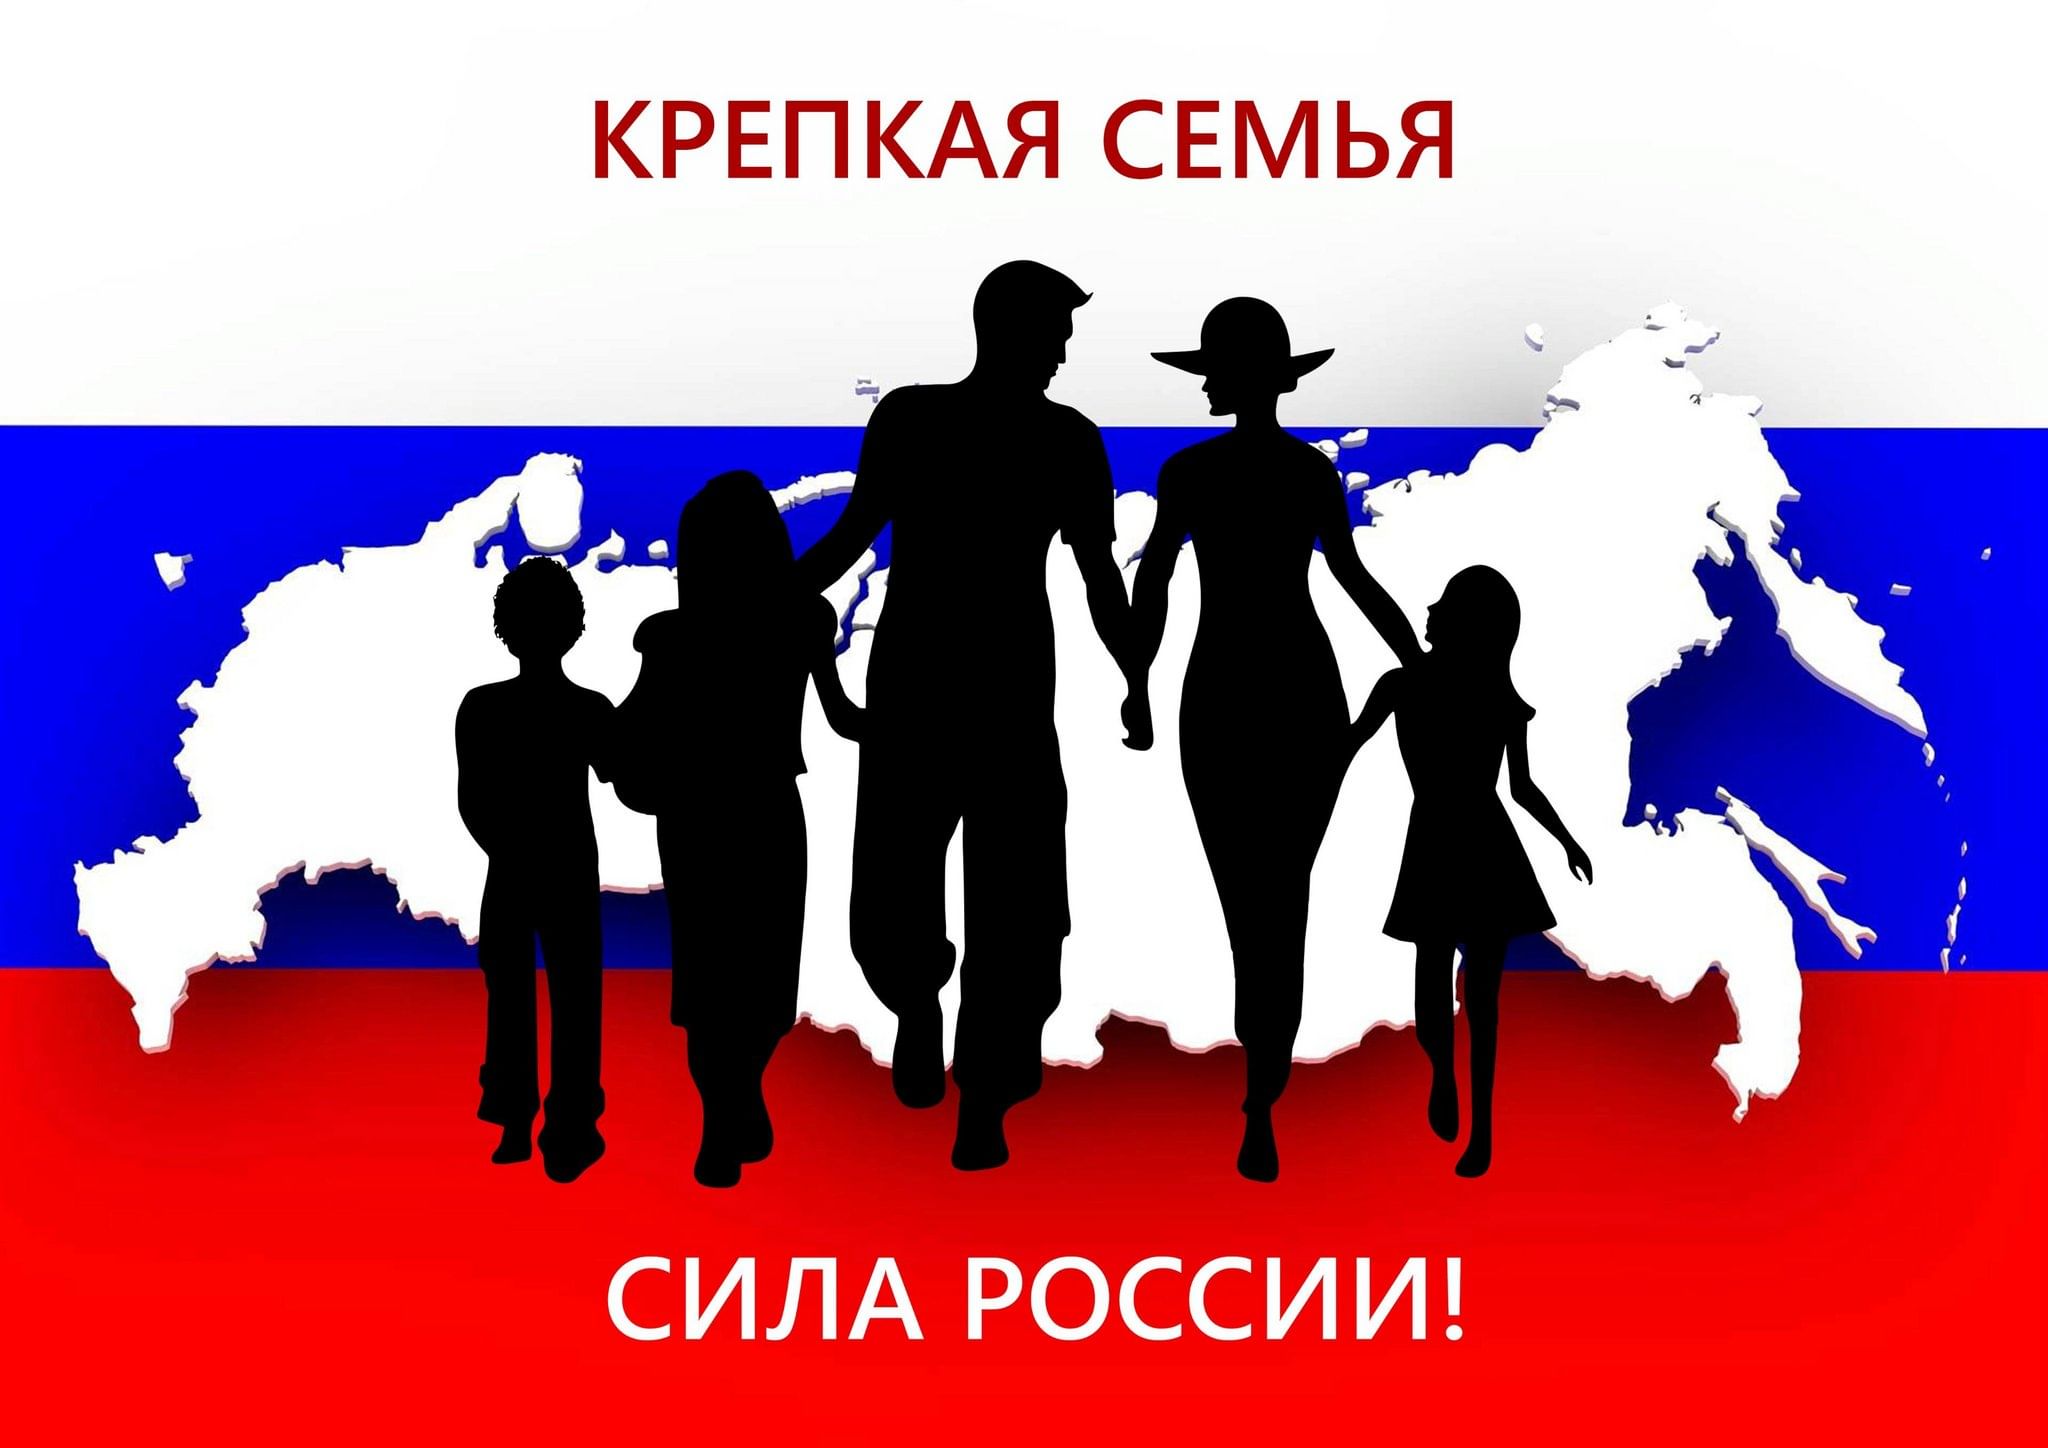 Крепкая семья крепкая Россия